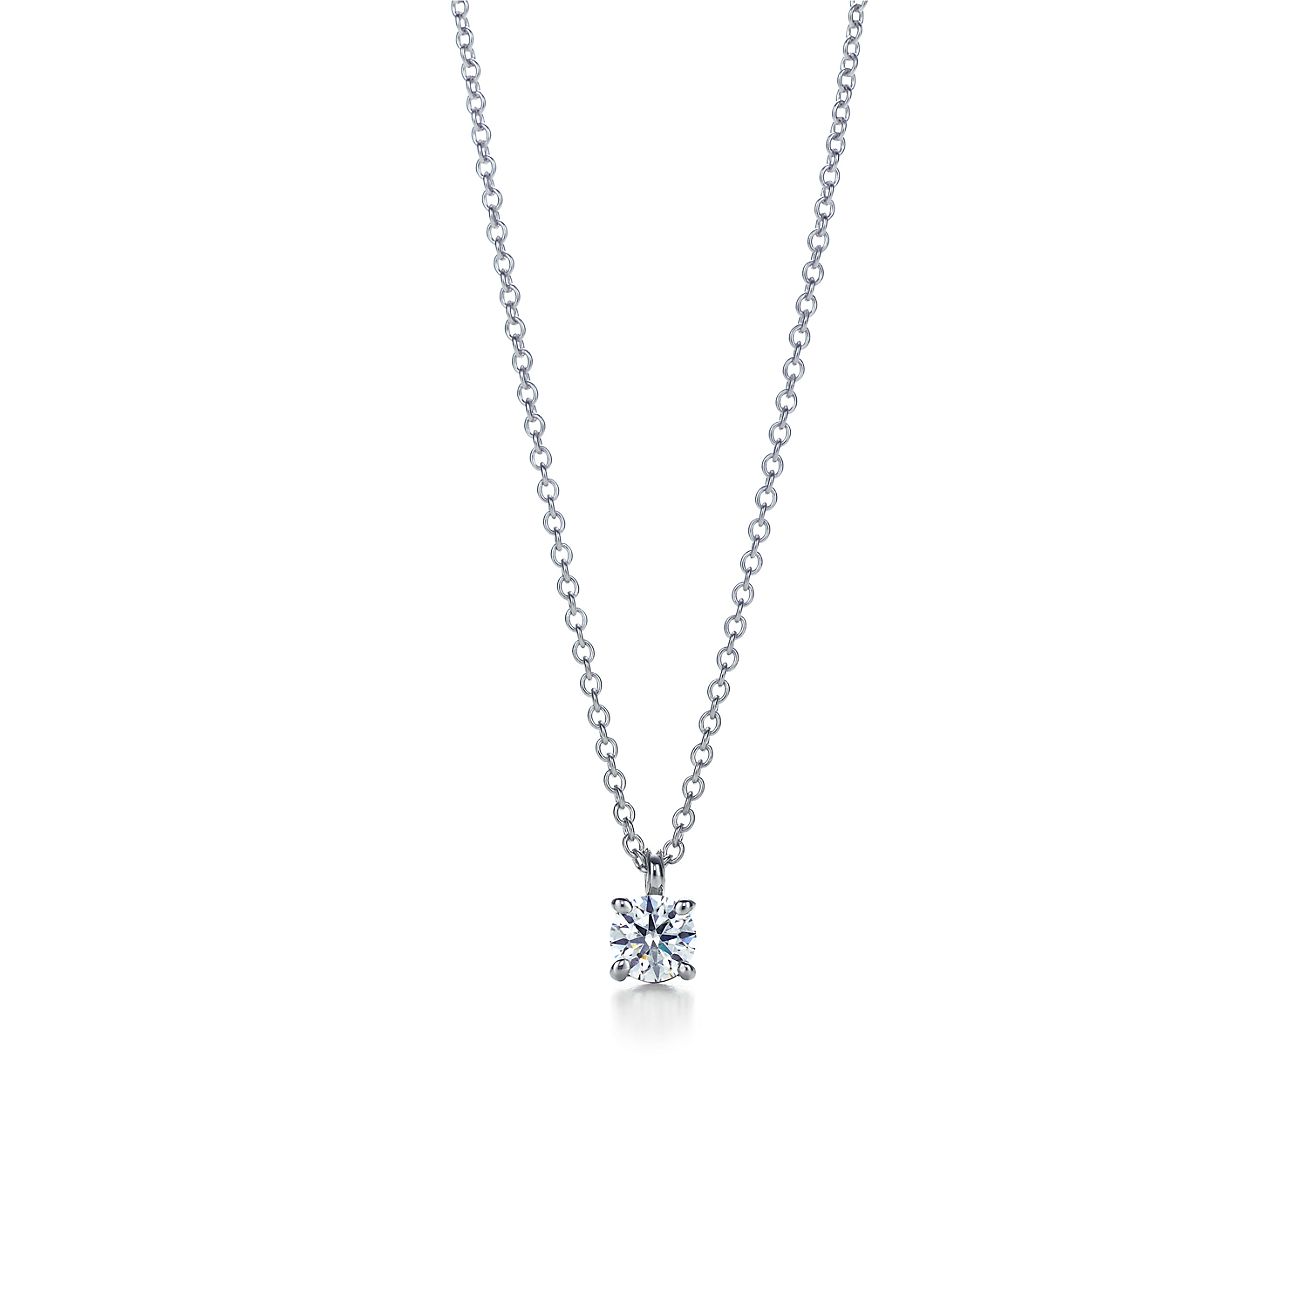 Tiffany solitaire diamond pendant in 